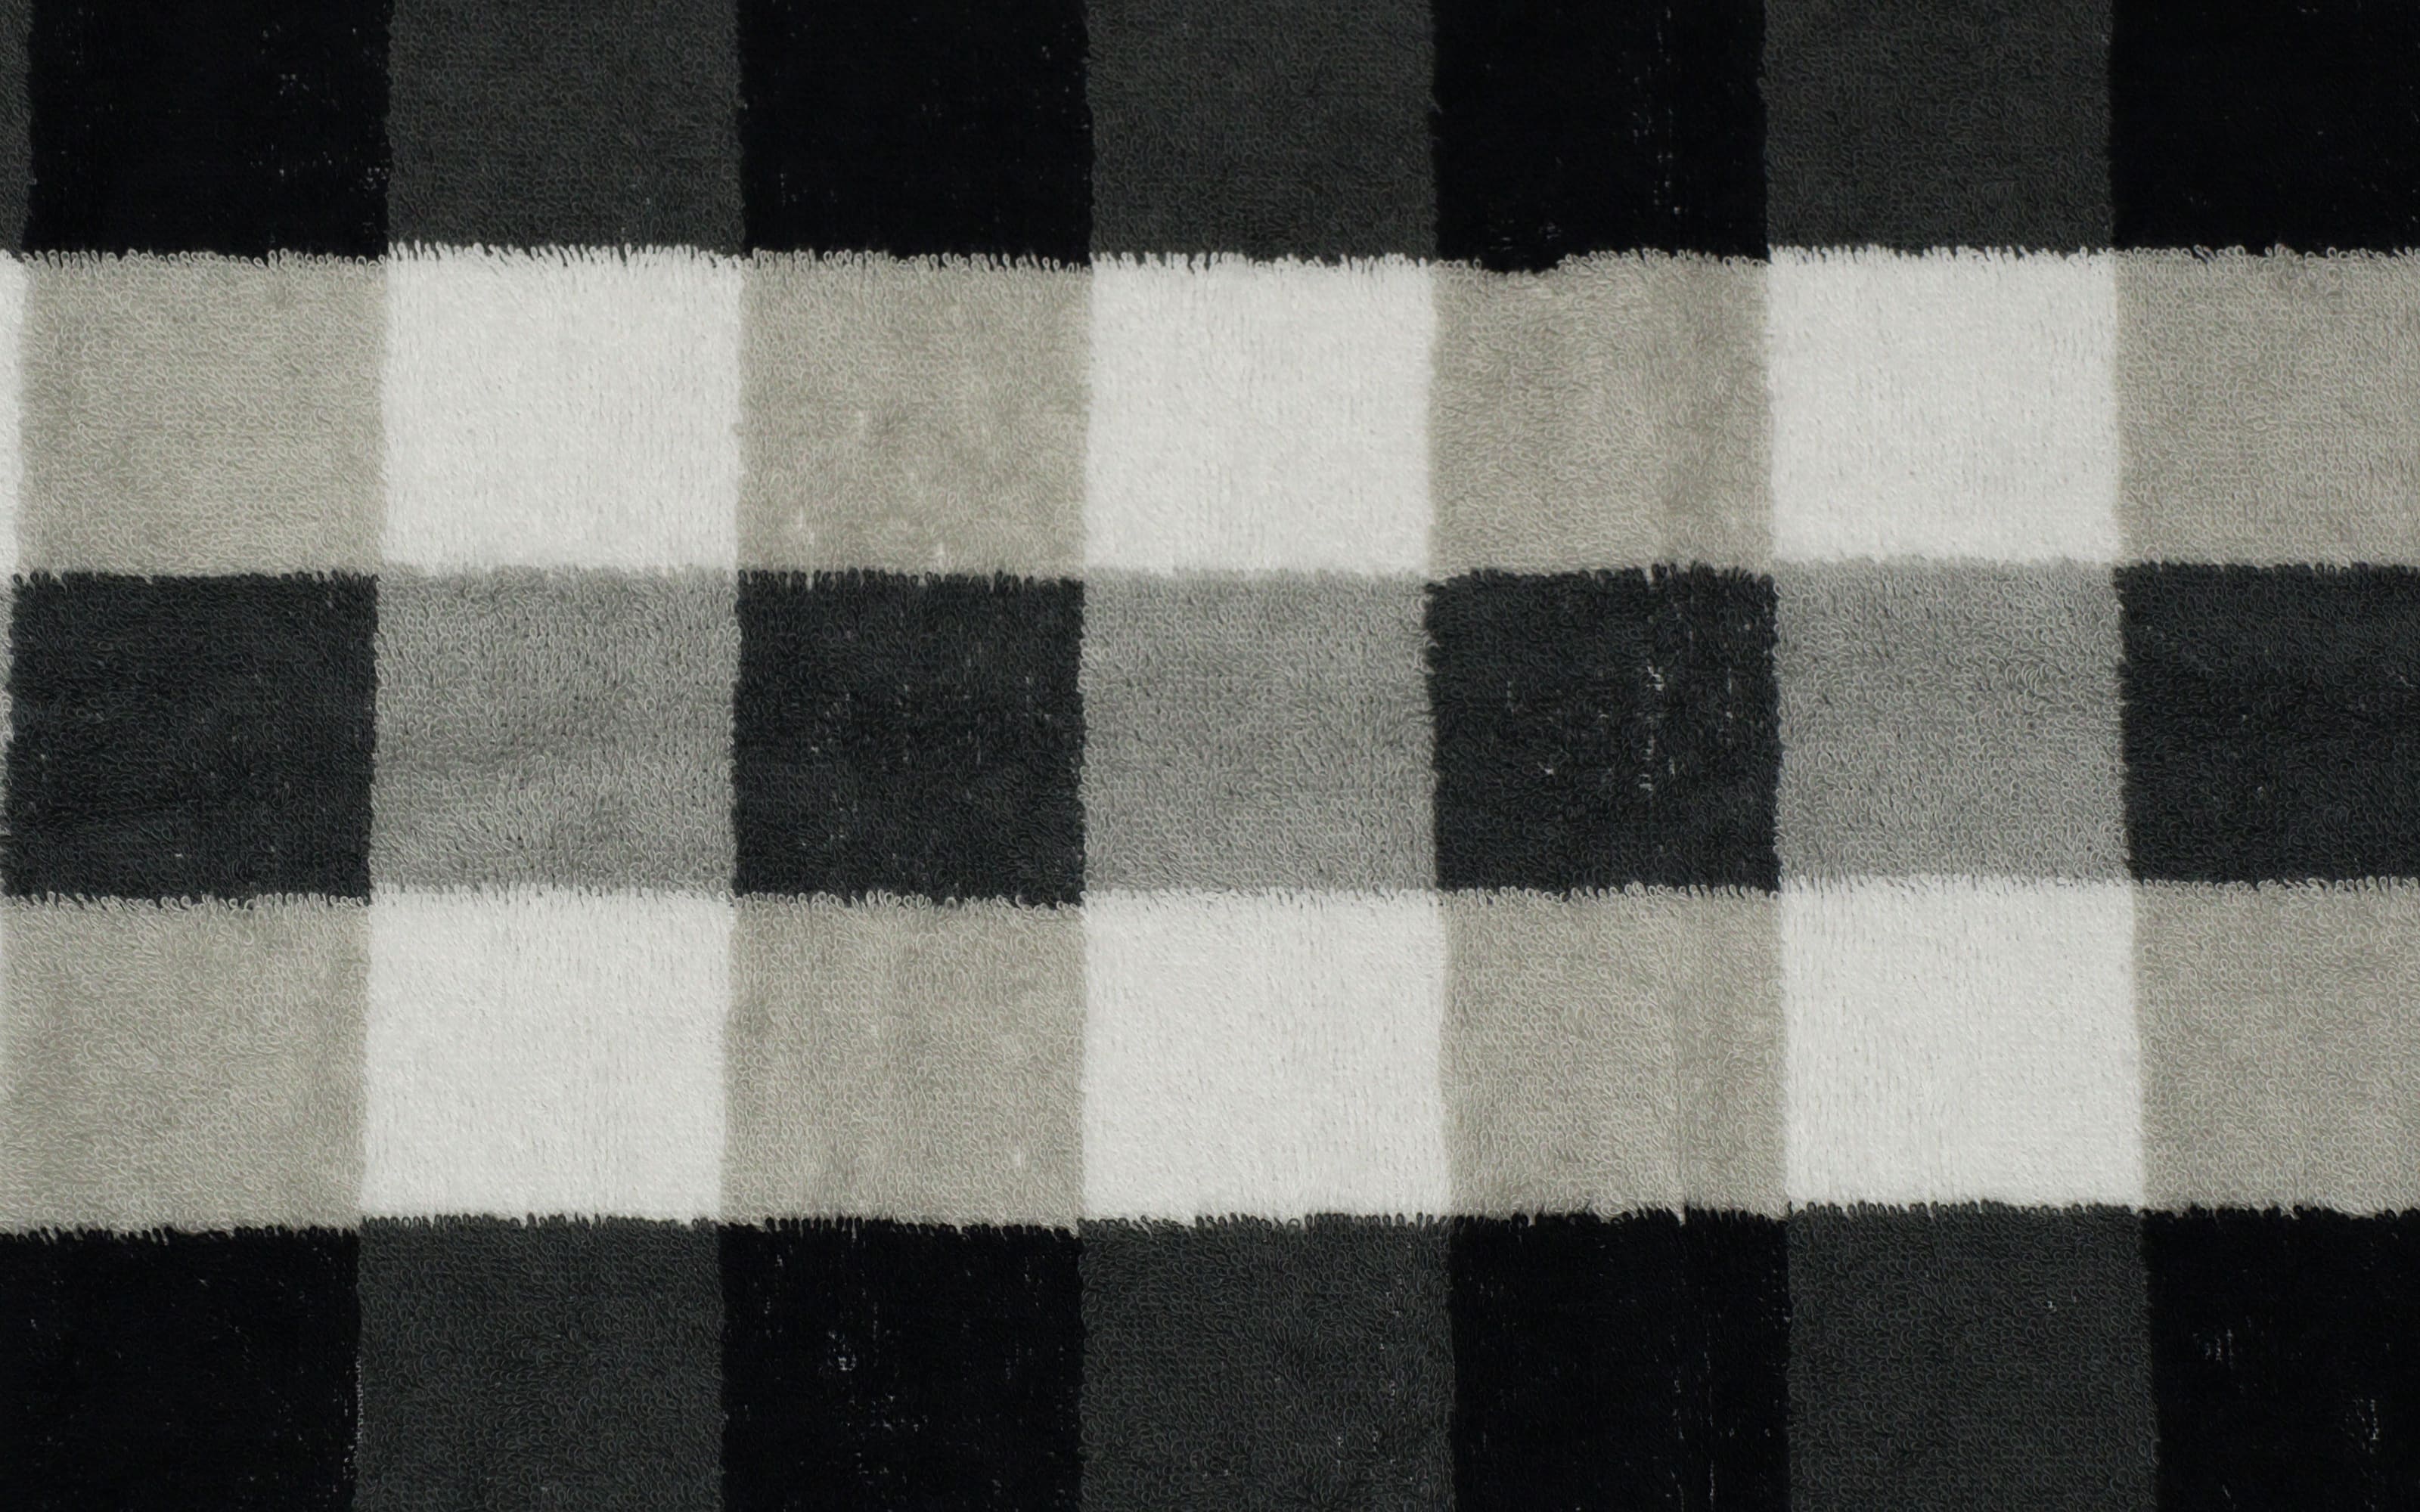 Duschtuch Karo, schwarz/weiß/grau, 70 x 140 cm